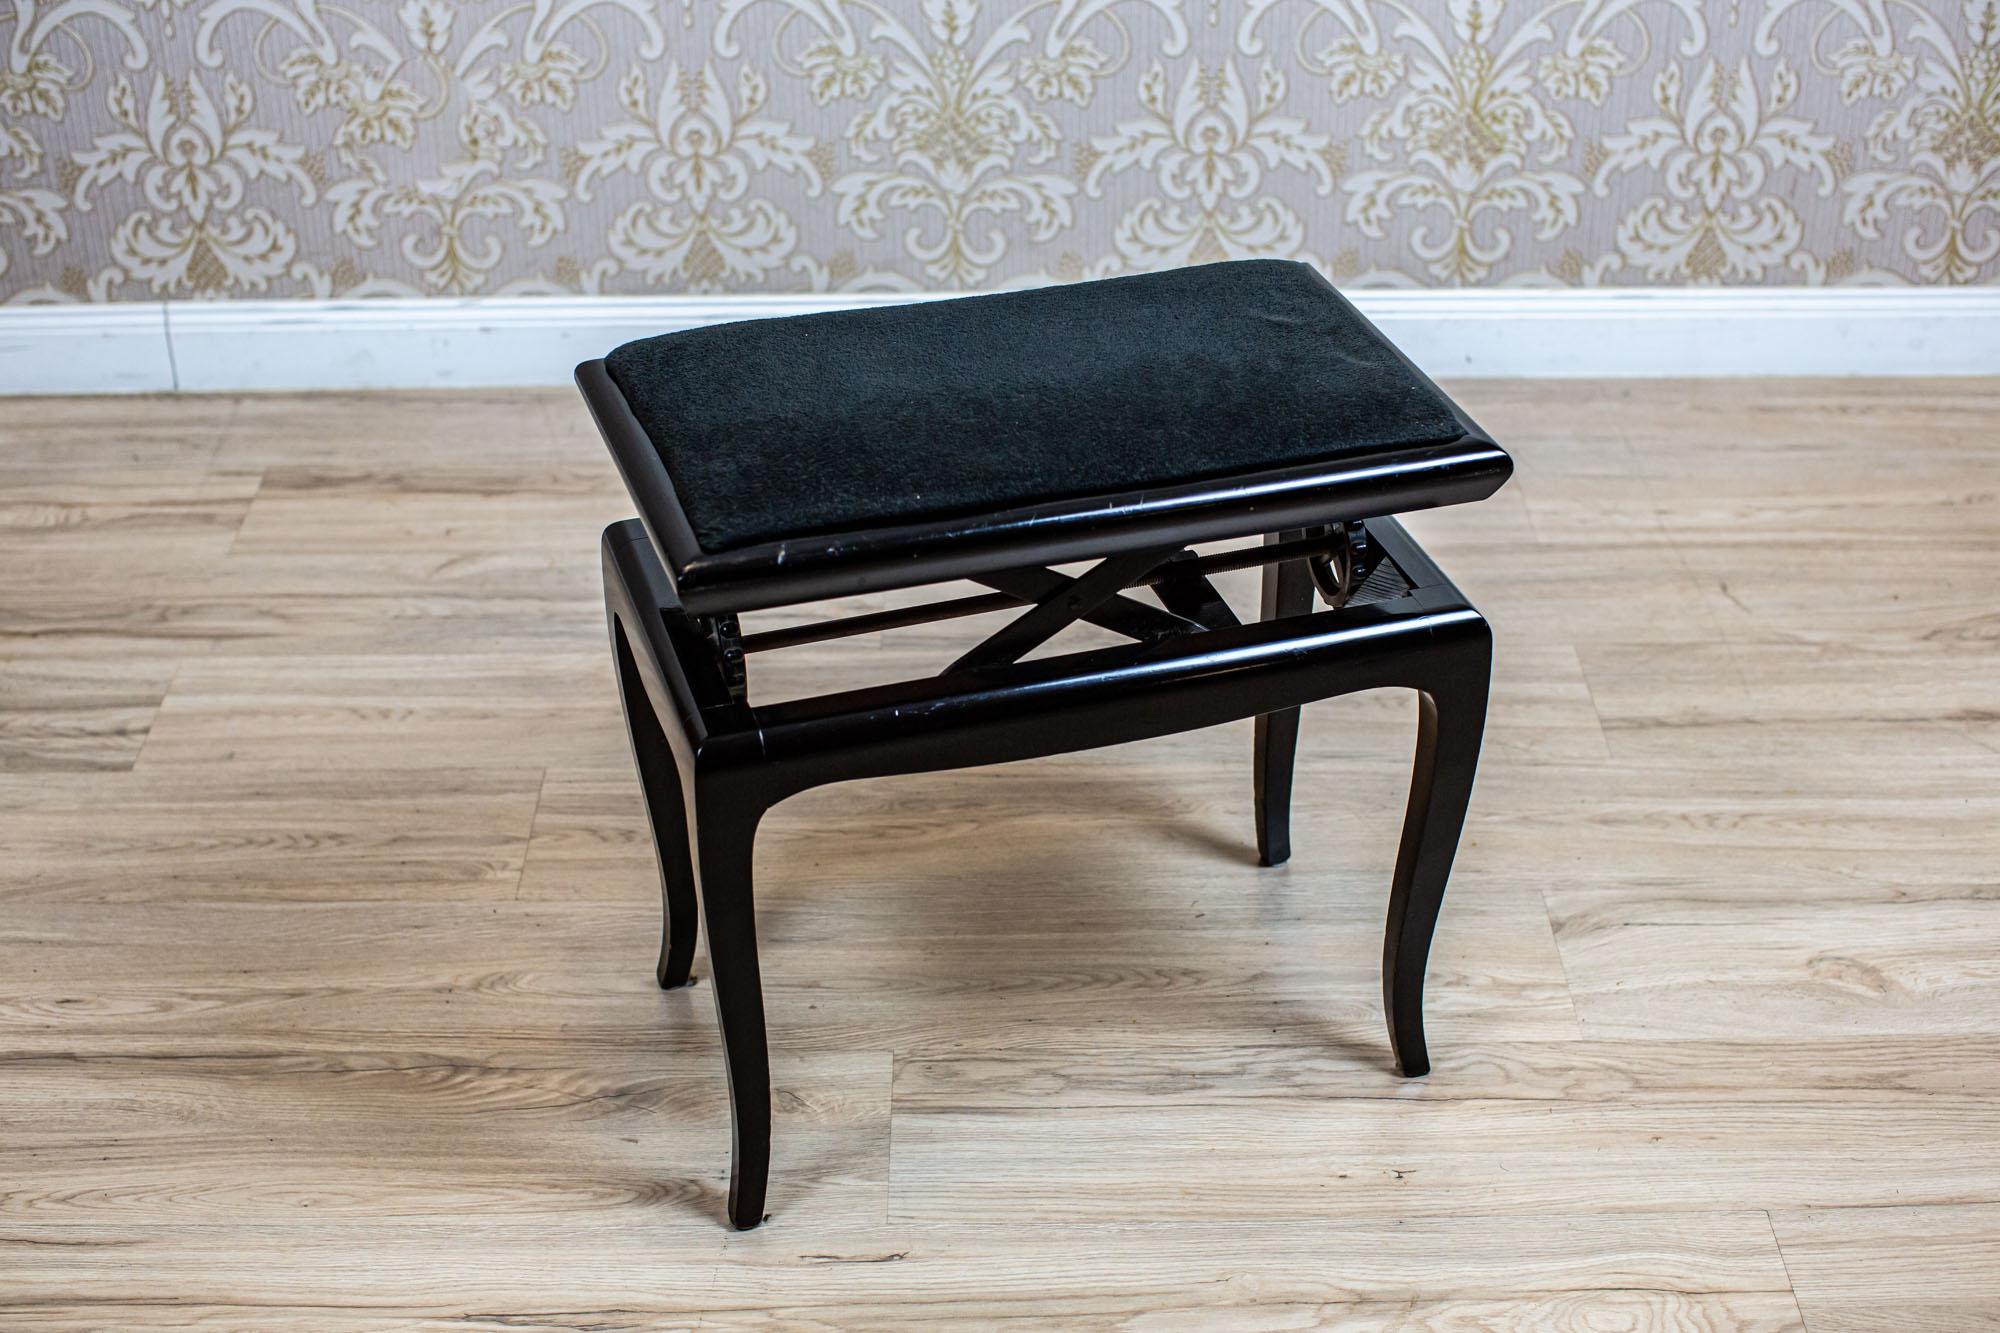 Tabouret de piano noir du début du 20e siècle avec siège rembourré

Un tabouret en bois du début du 20e siècle avec un siège rembourré souple et une hauteur réglable.

Ce meuble a été rénové et sa finition est en vernis français.